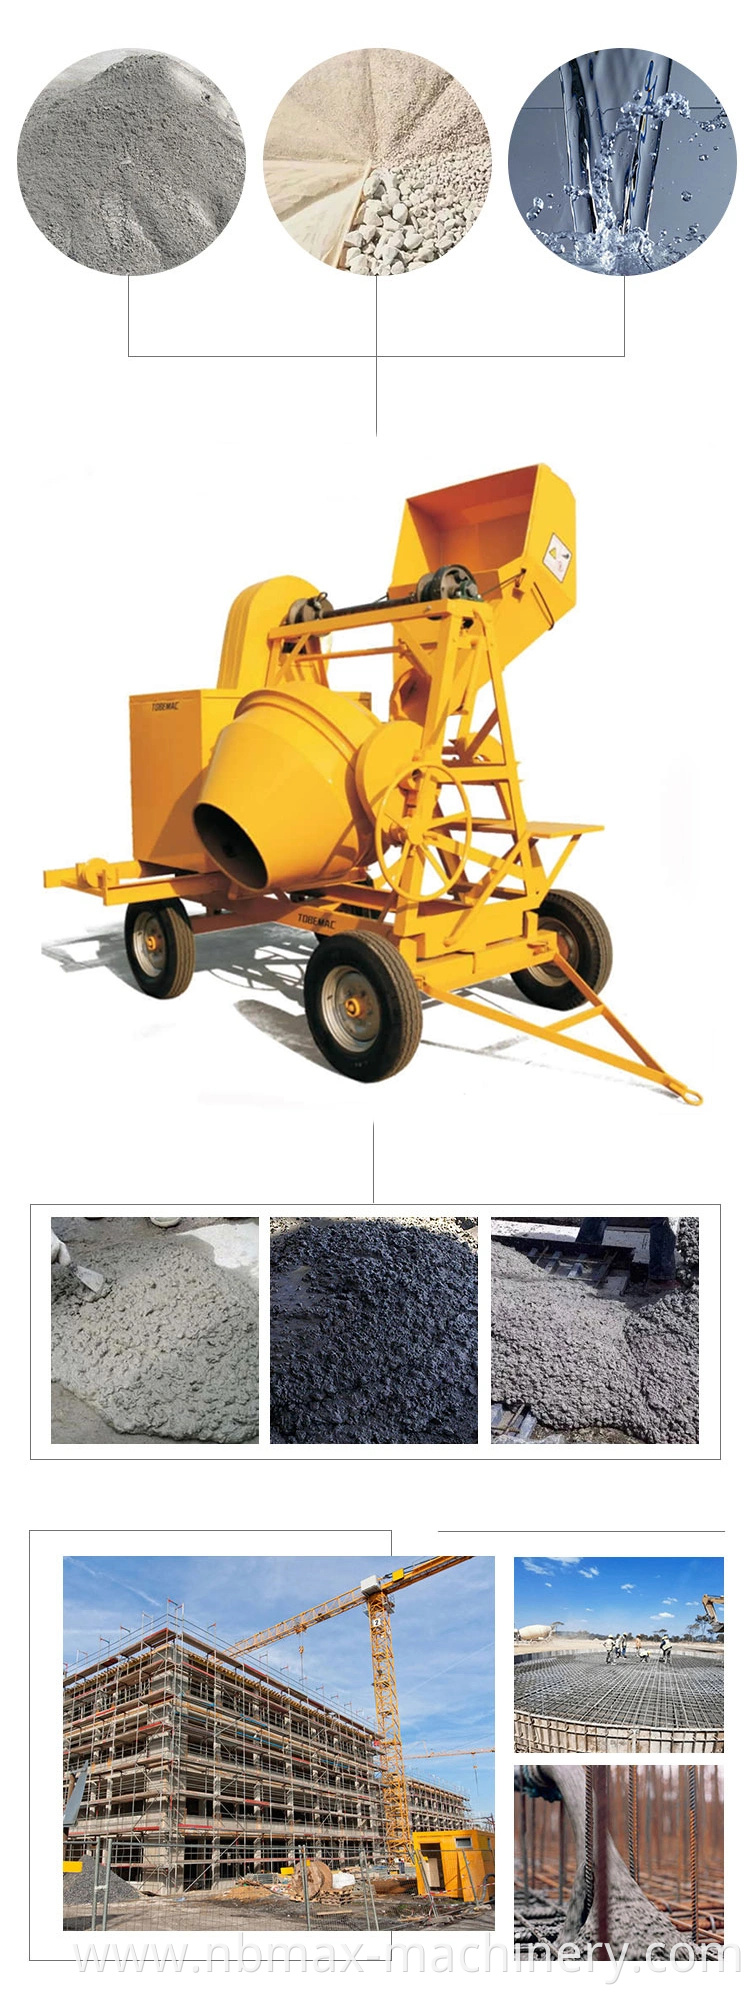 510L Diesel Cement Mixer Beton with Winch / Diesel Engine Concrete Mixer Machine Price in Ghana